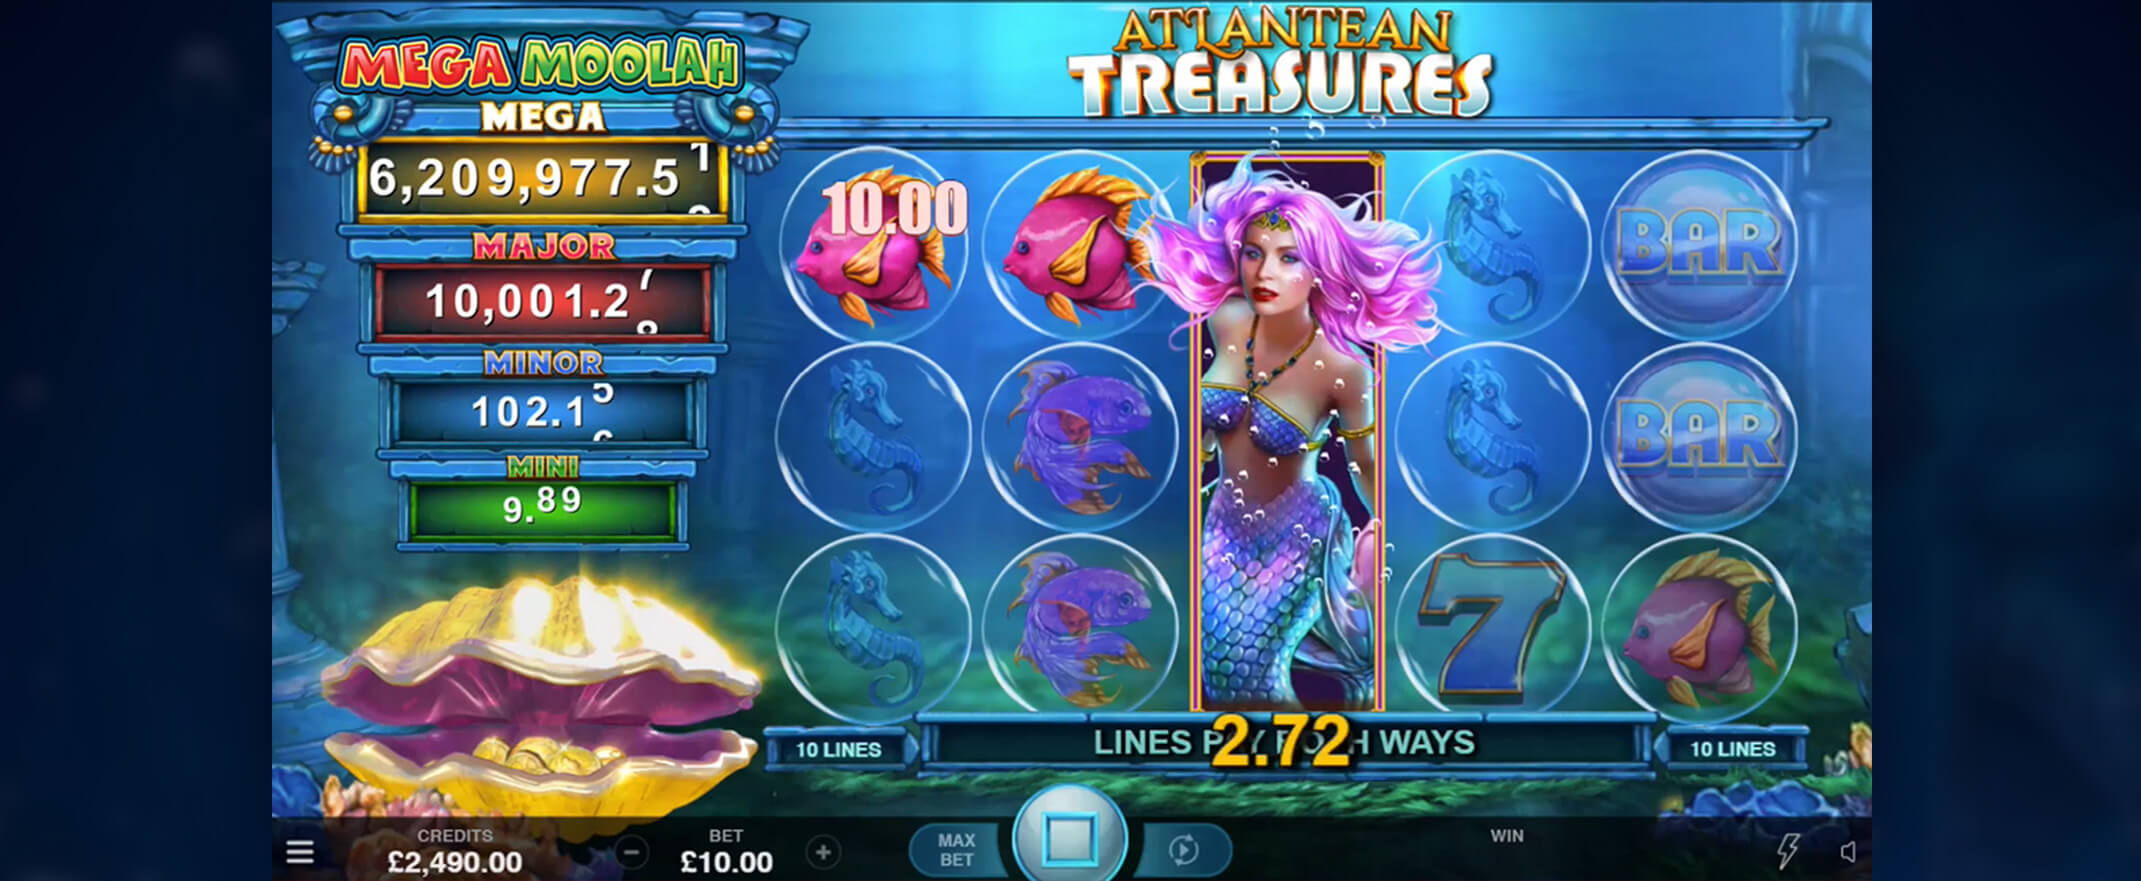 Atlantean Treasures Mega Moolah Spielautomaten spielen